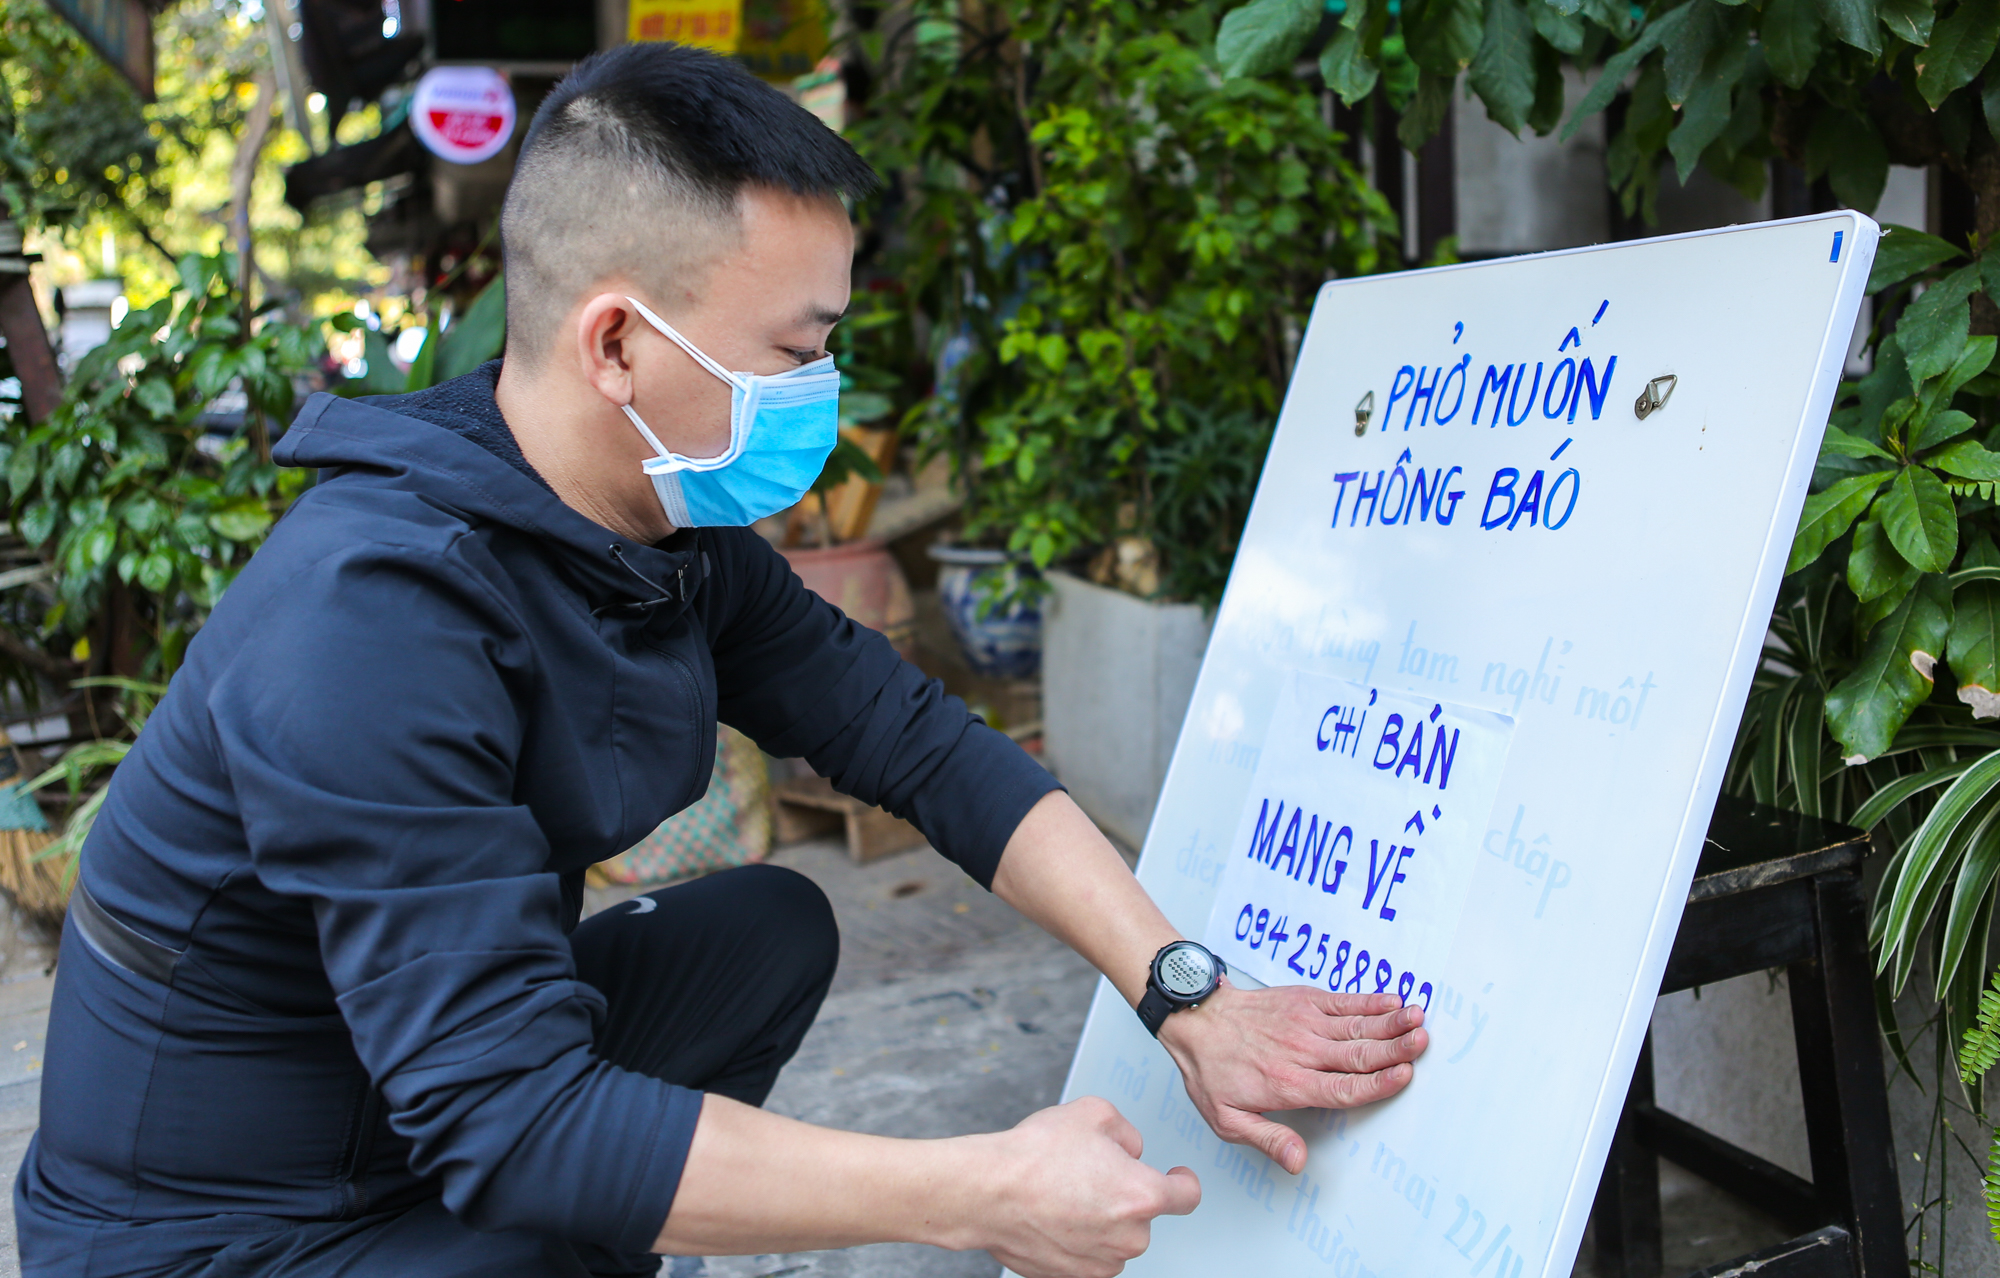 CLIP: Thêm một quận của Hà Nội cho phép các quán ăn chỉ bán hàng mang về - Ảnh 3.